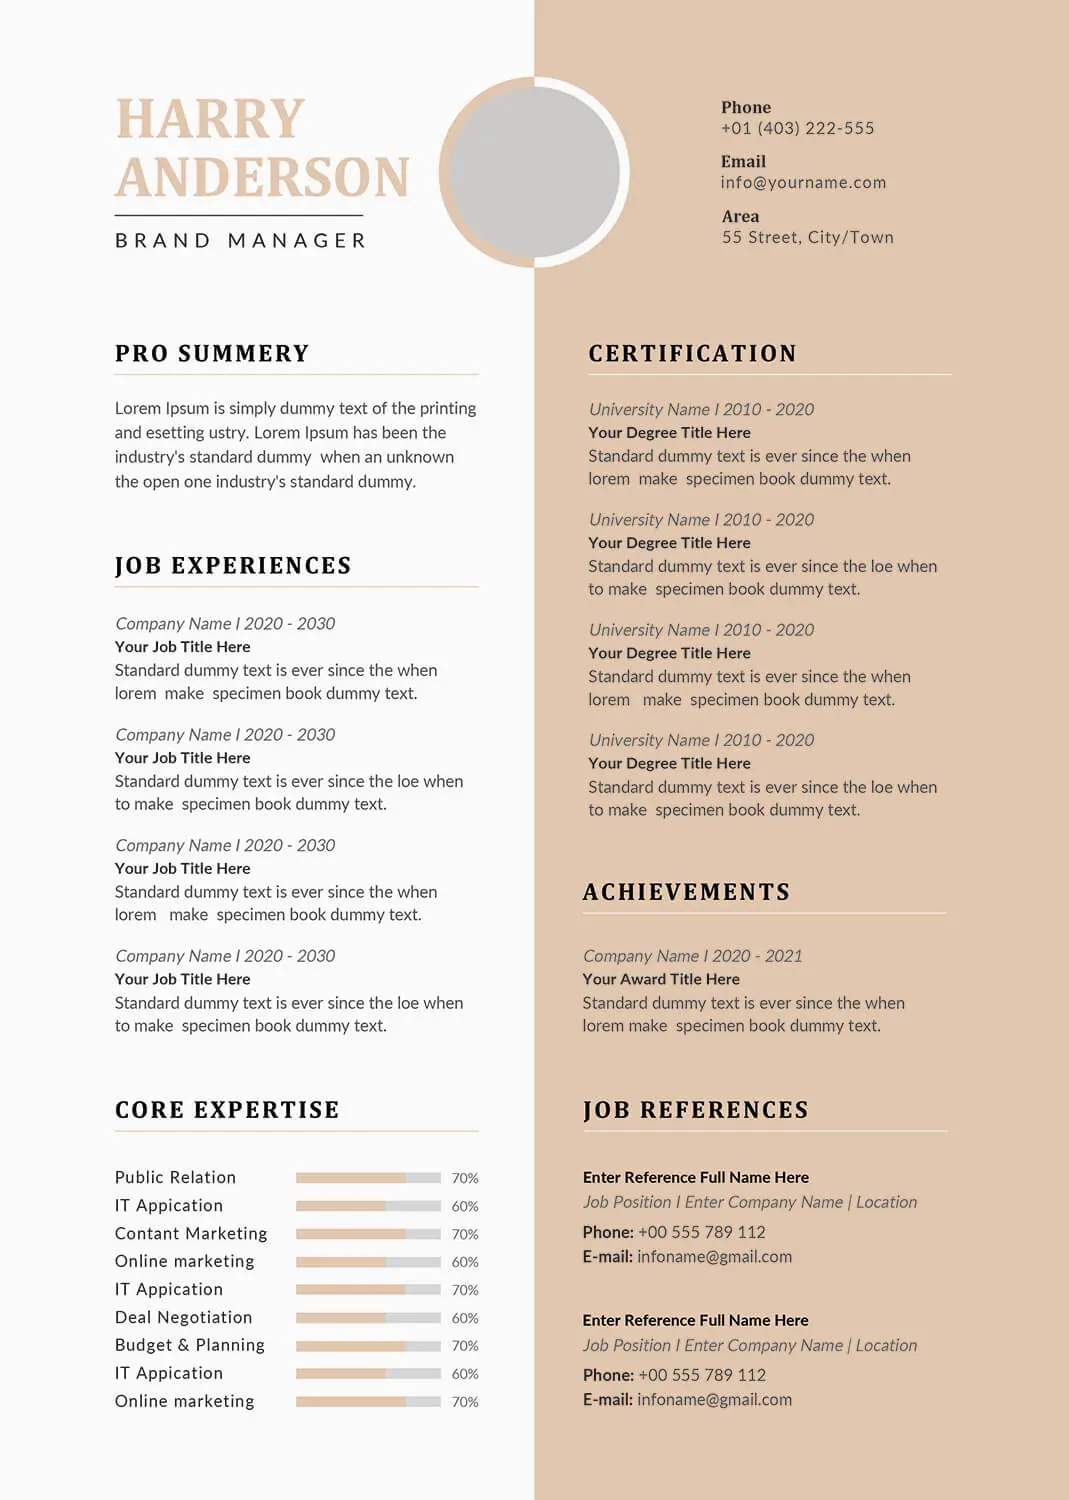 recruiter-resume